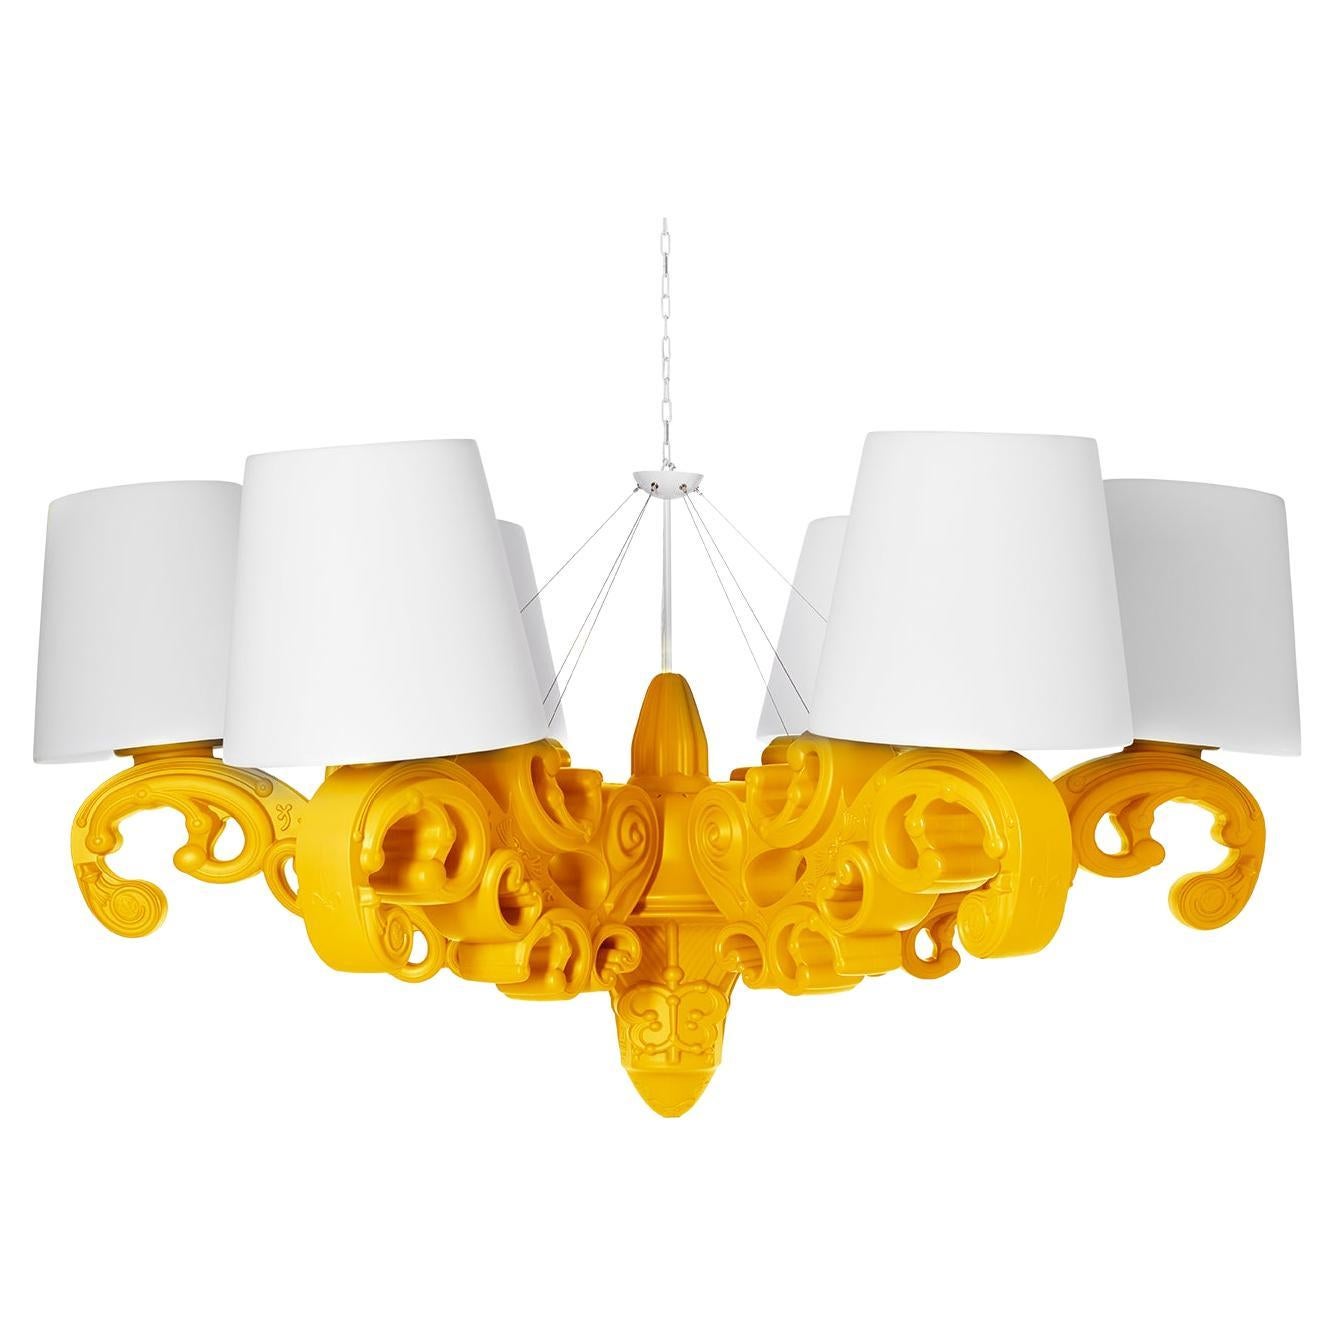 Slide Design Crown of Love Pendant Light in Saffron Yellow by Moro, Pigatti For Sale